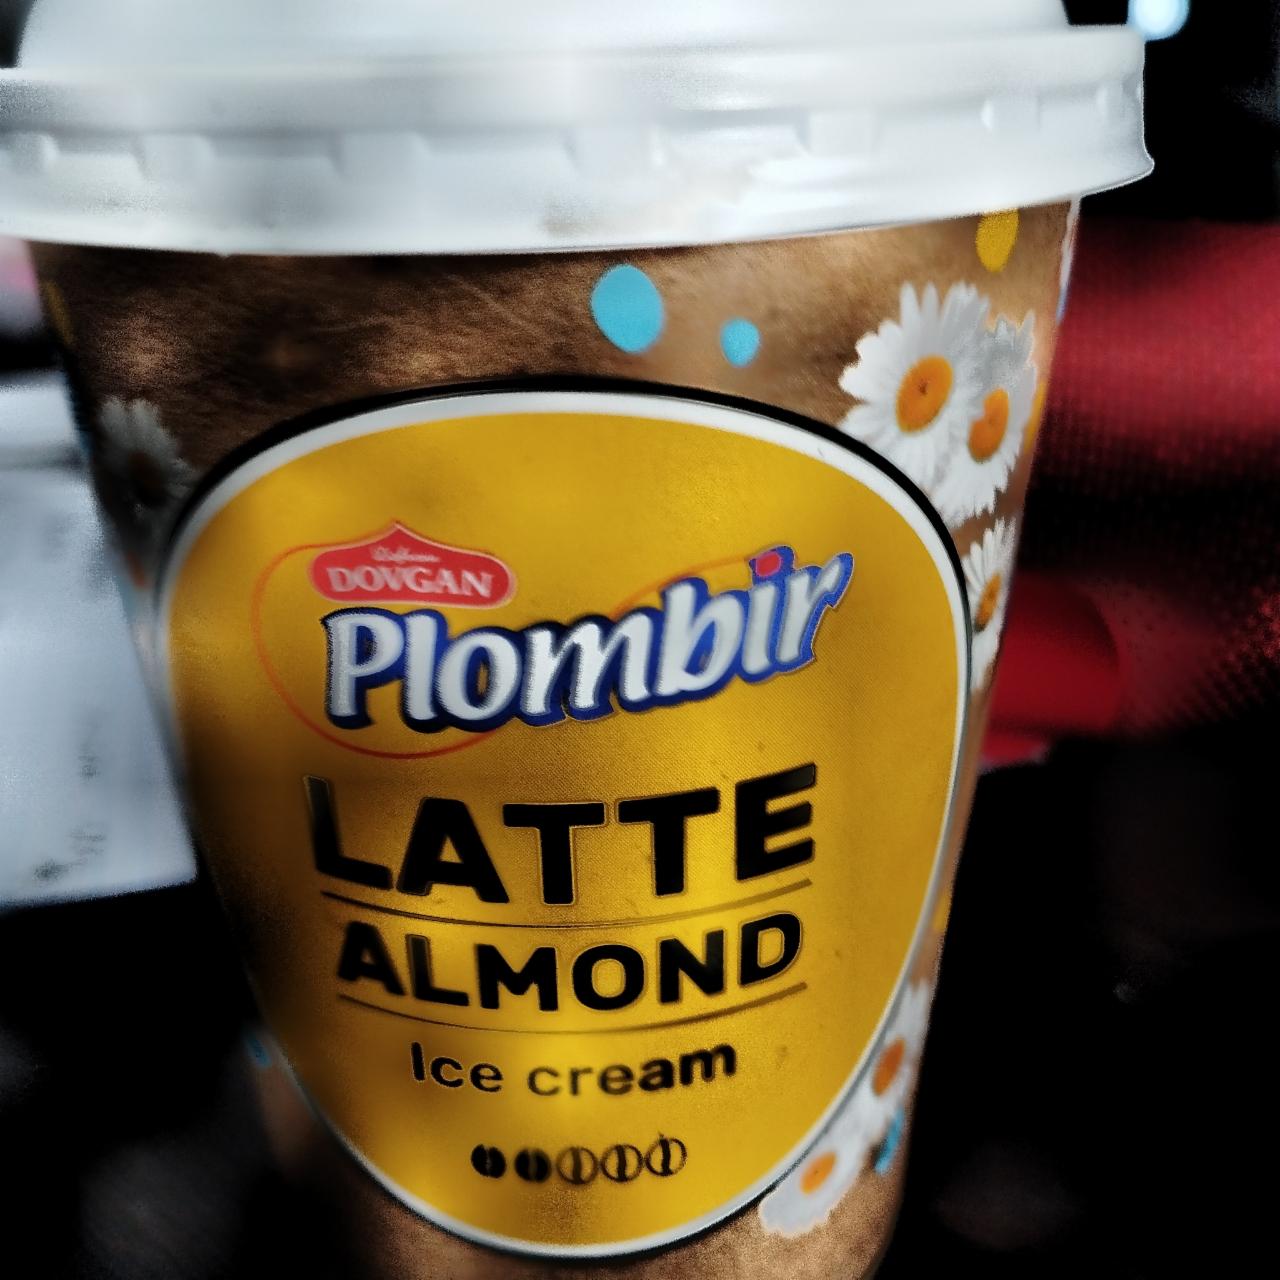 Фото - Plombir Latte almond ice cream Dovgan